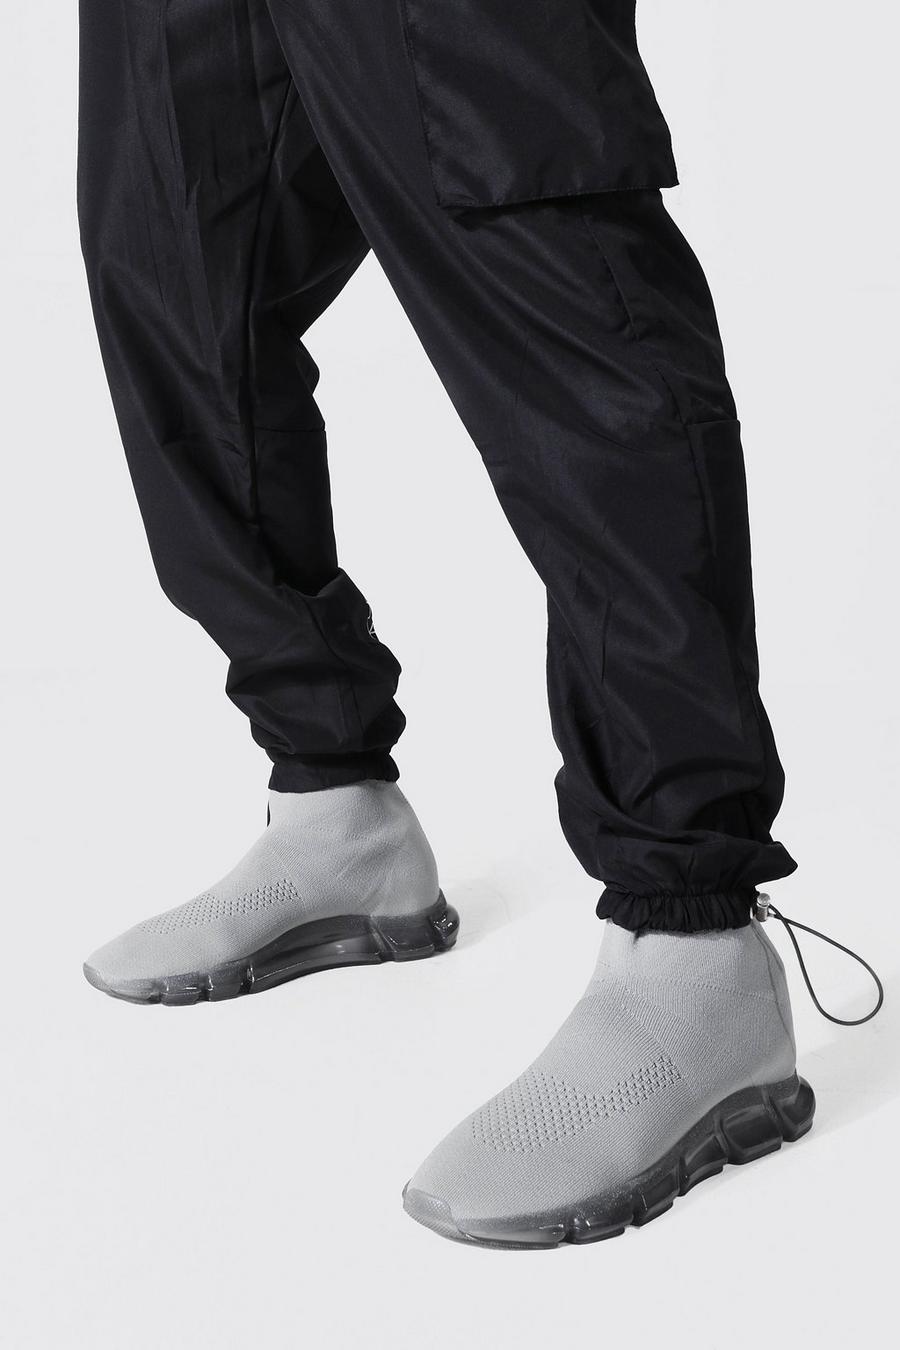 Botas calcetín con suela transparente, Grey grigio image number 1